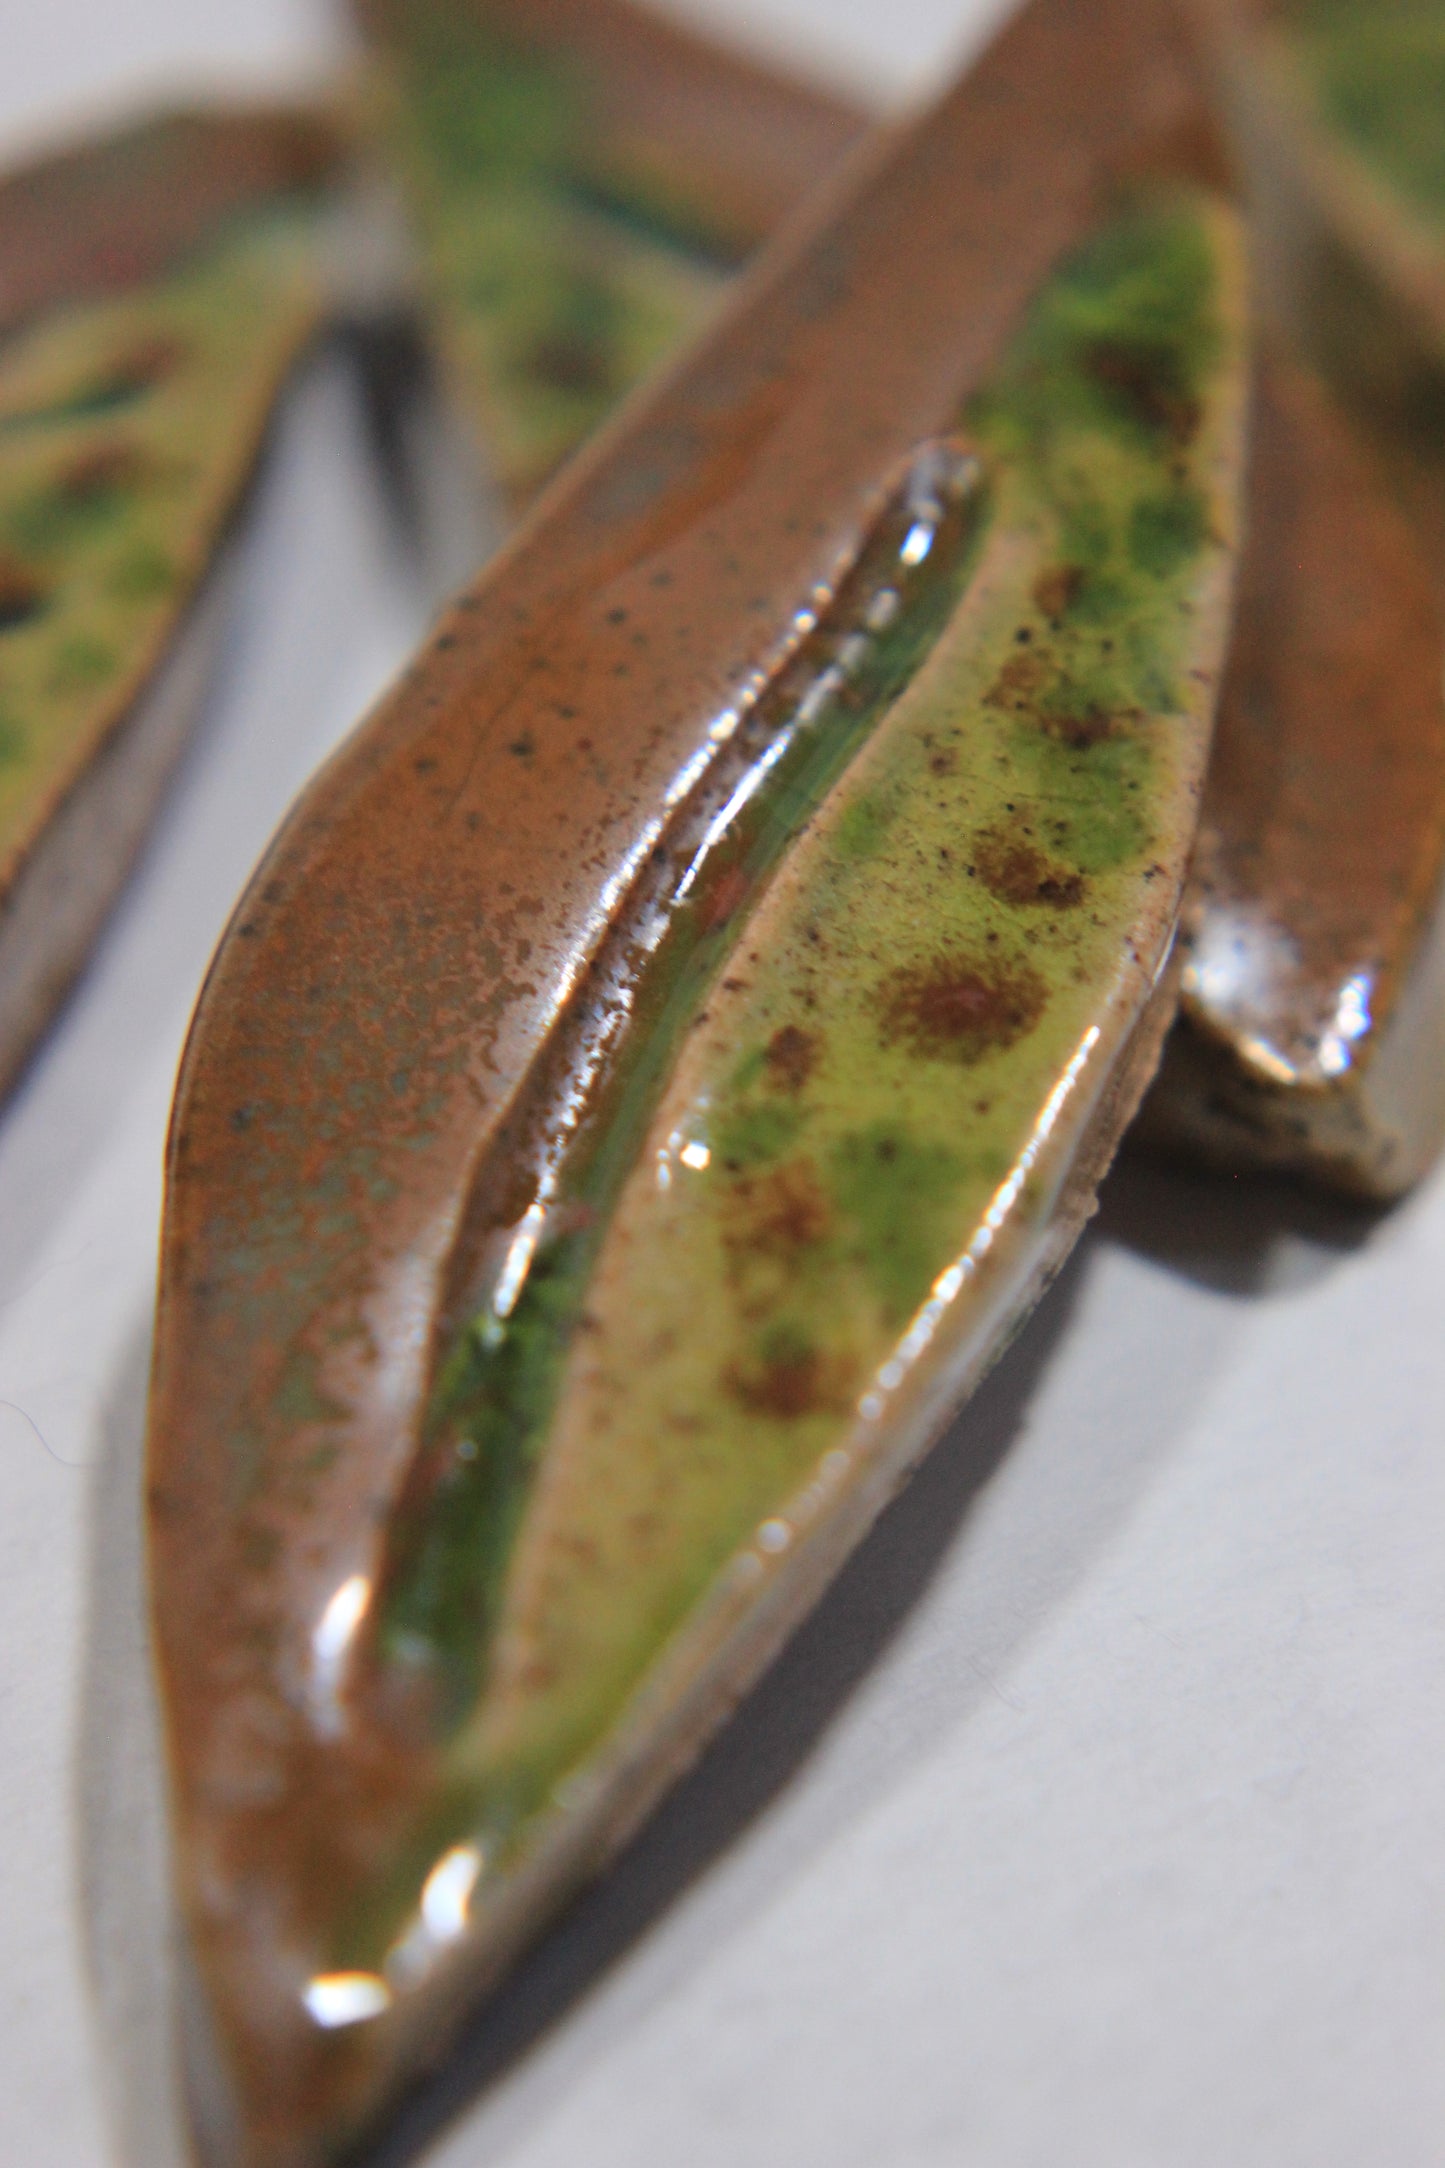 Ceramic Brown & Green Leaf Tile Set